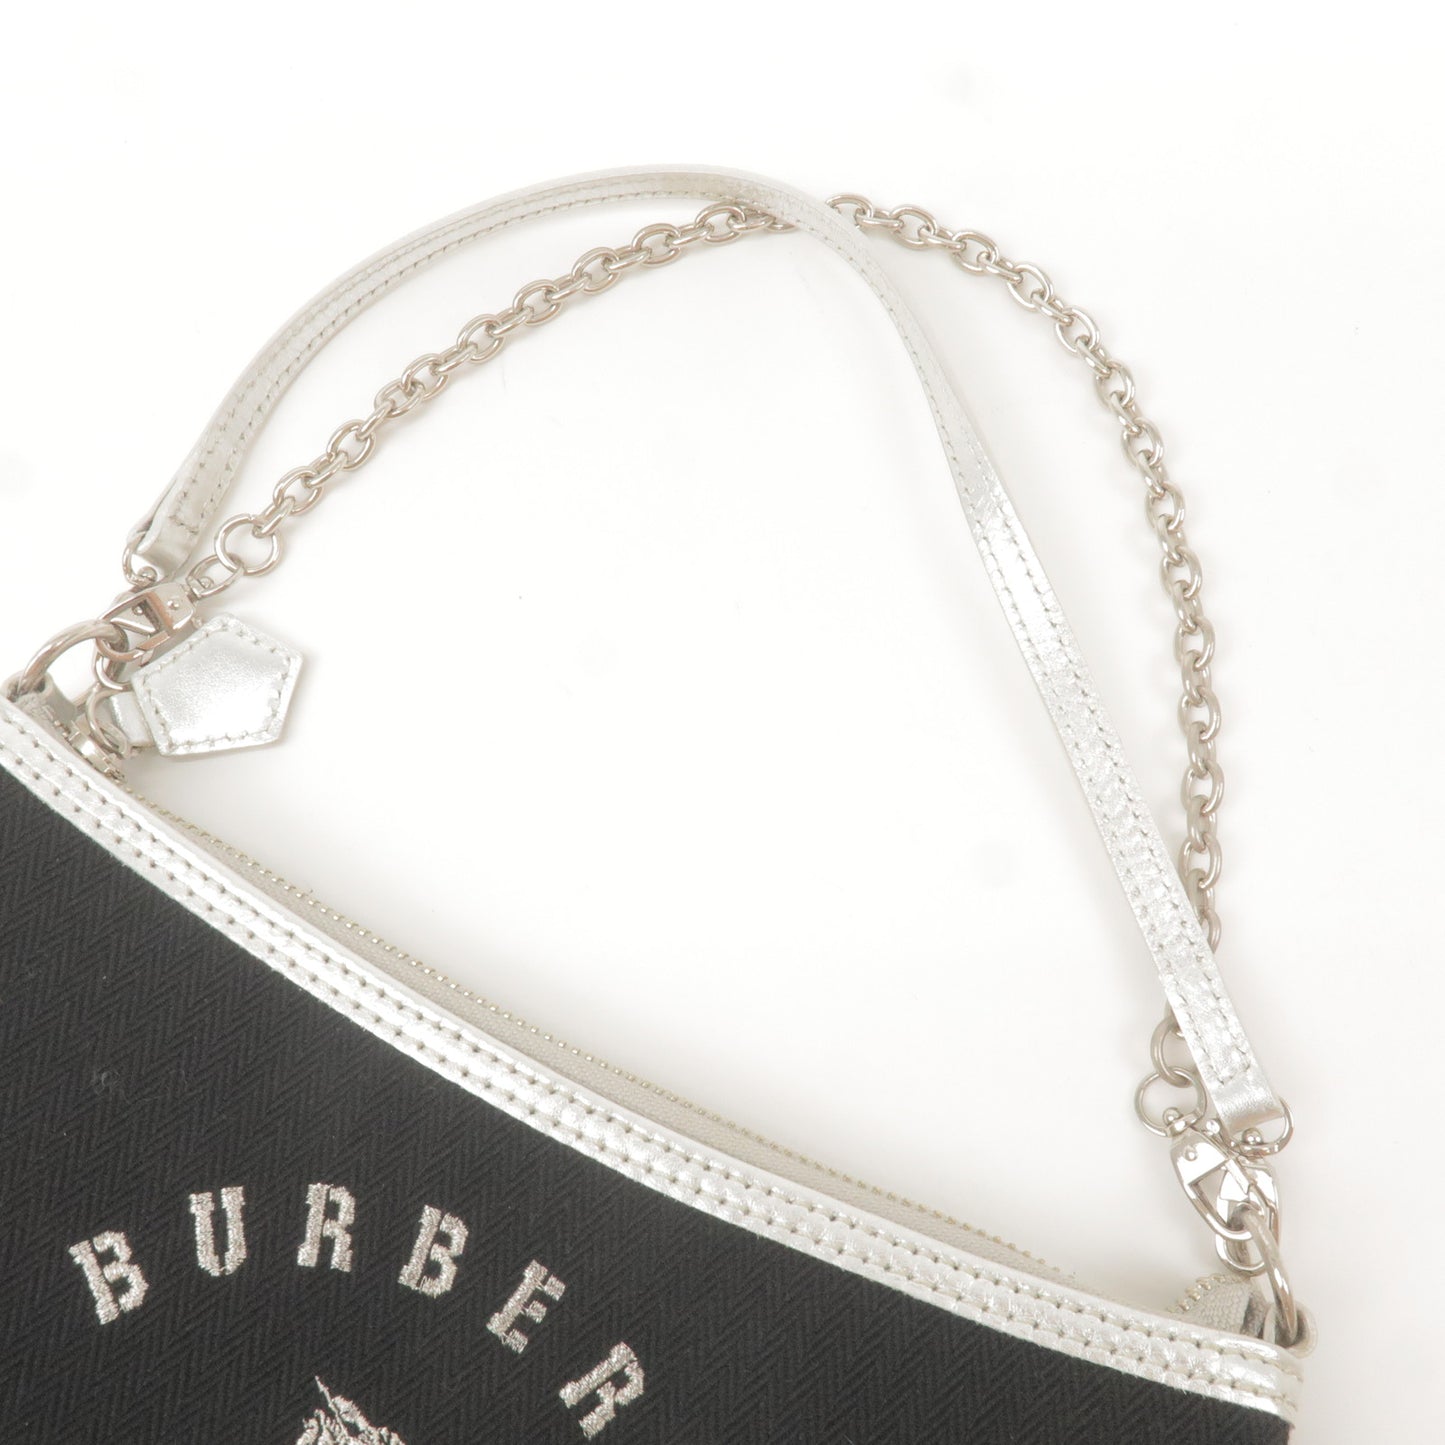 BURBERRY Blue Label Canvas Leather Shoulder Bag Black Silver